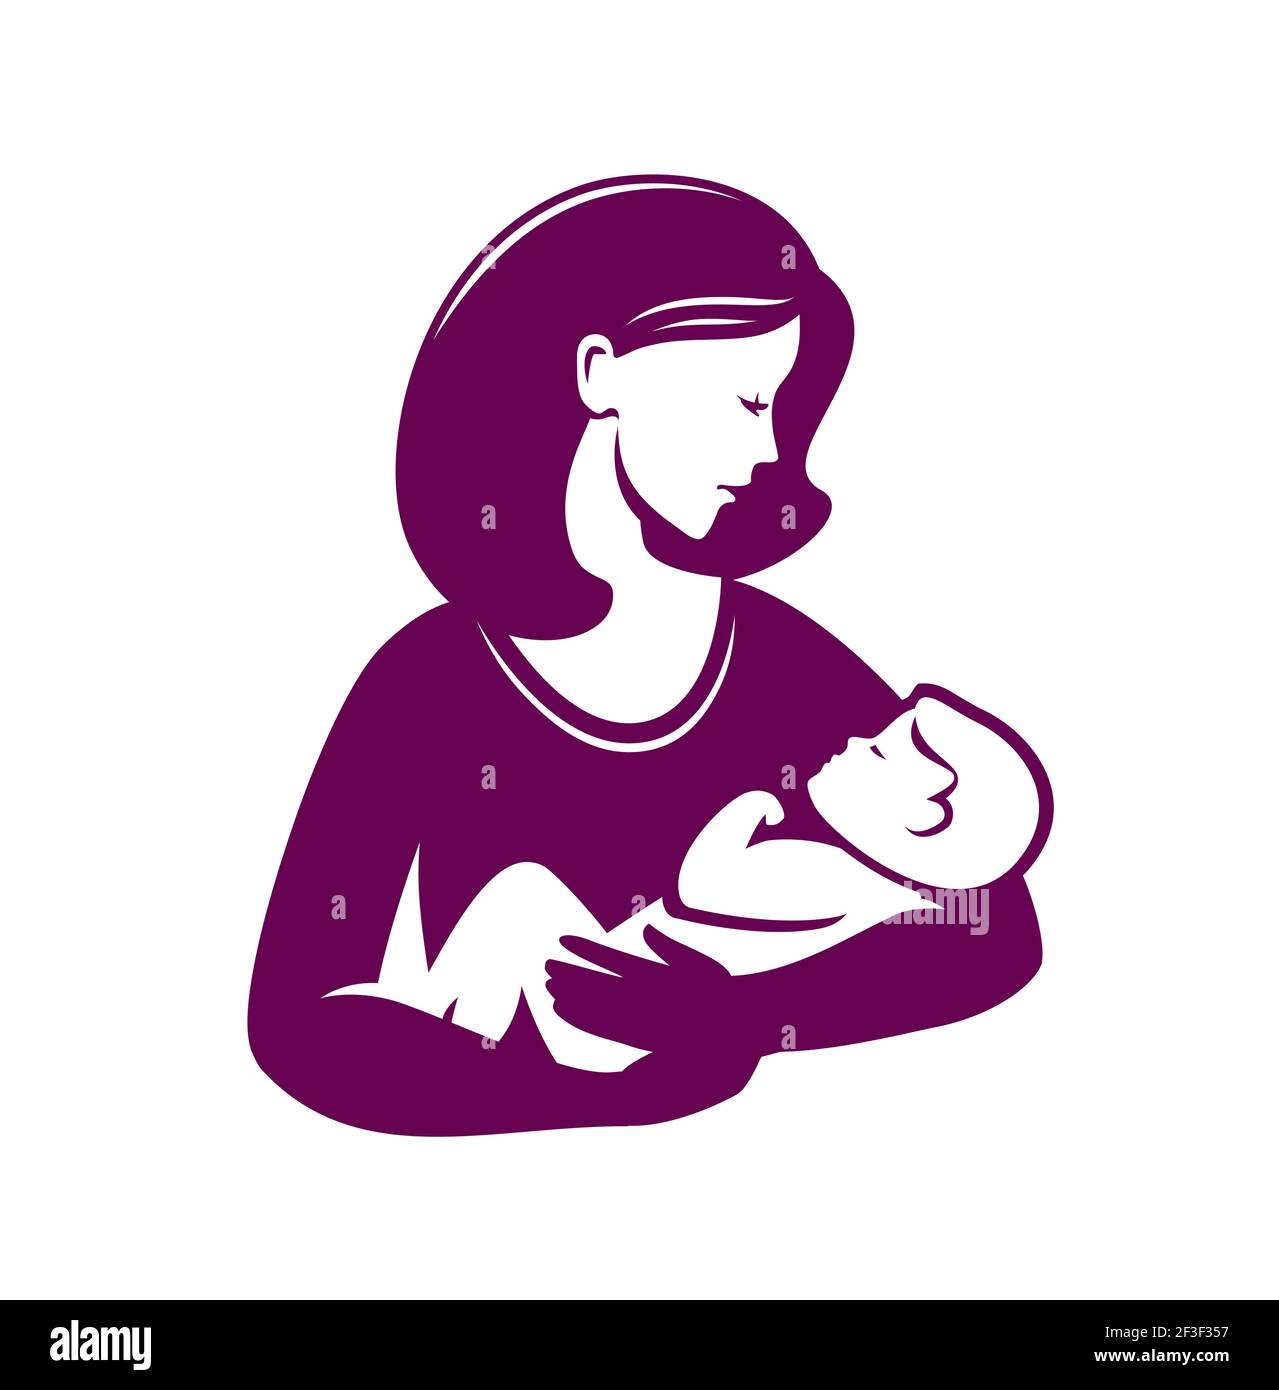 Mutter liebevolle Umarmungen kleines Baby Symbol. Muttertag, Mutterschaft oder Logo Stock Vektor